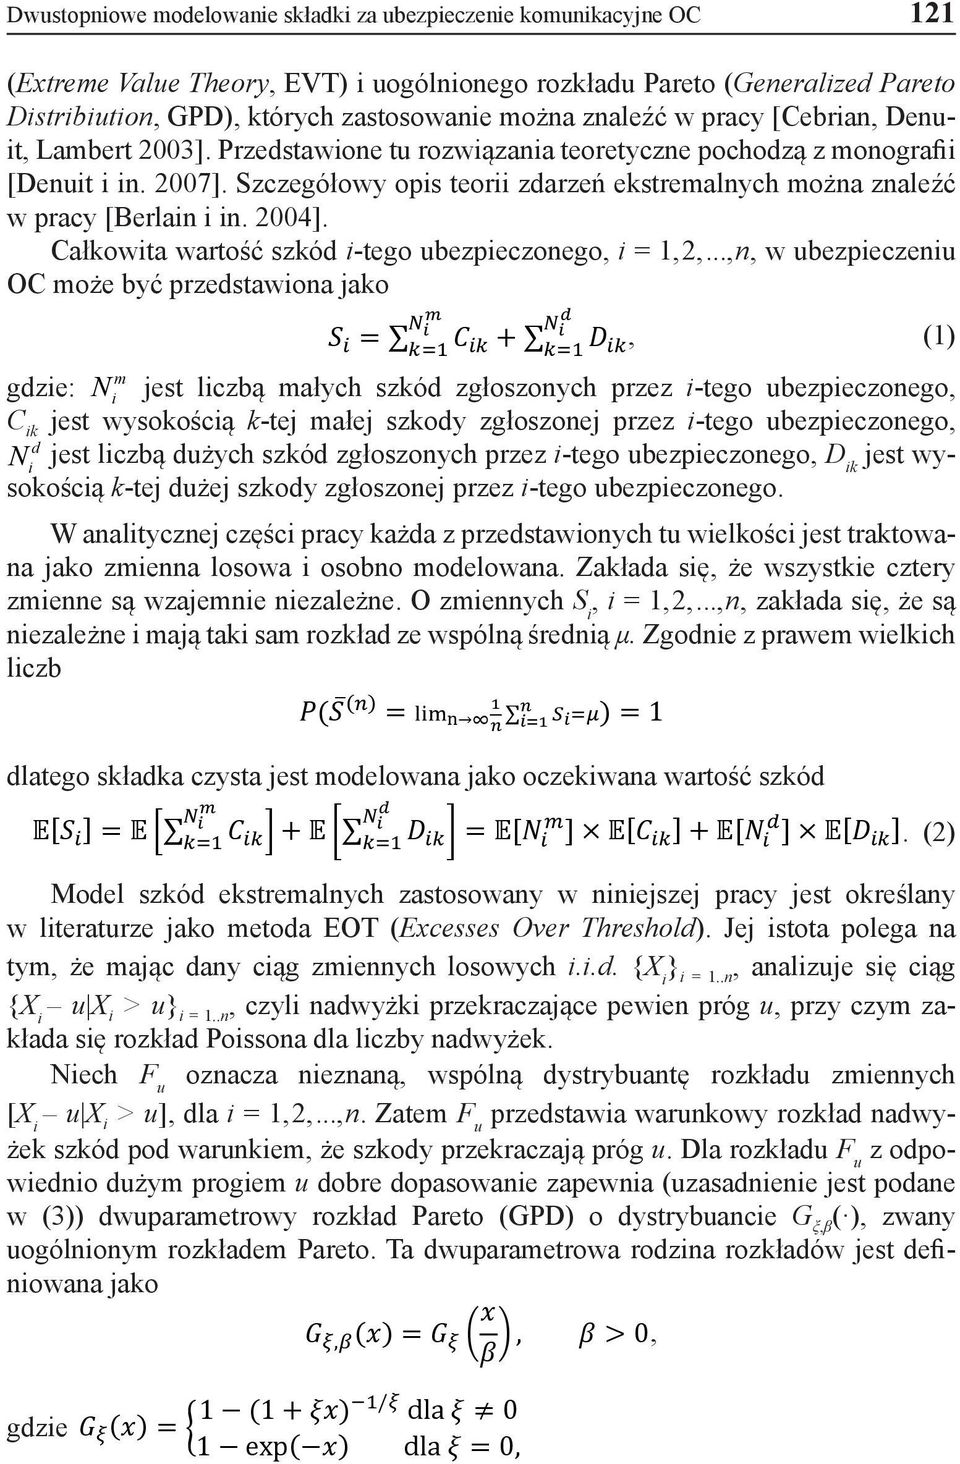 Szczegółowy opis teorii zdarzeń ekstremalnych można znaleźć w pracy [Berlain i in. 2004]. Całkowita wartość szkód i-tego ubezpieczonego, i = 1,2,.